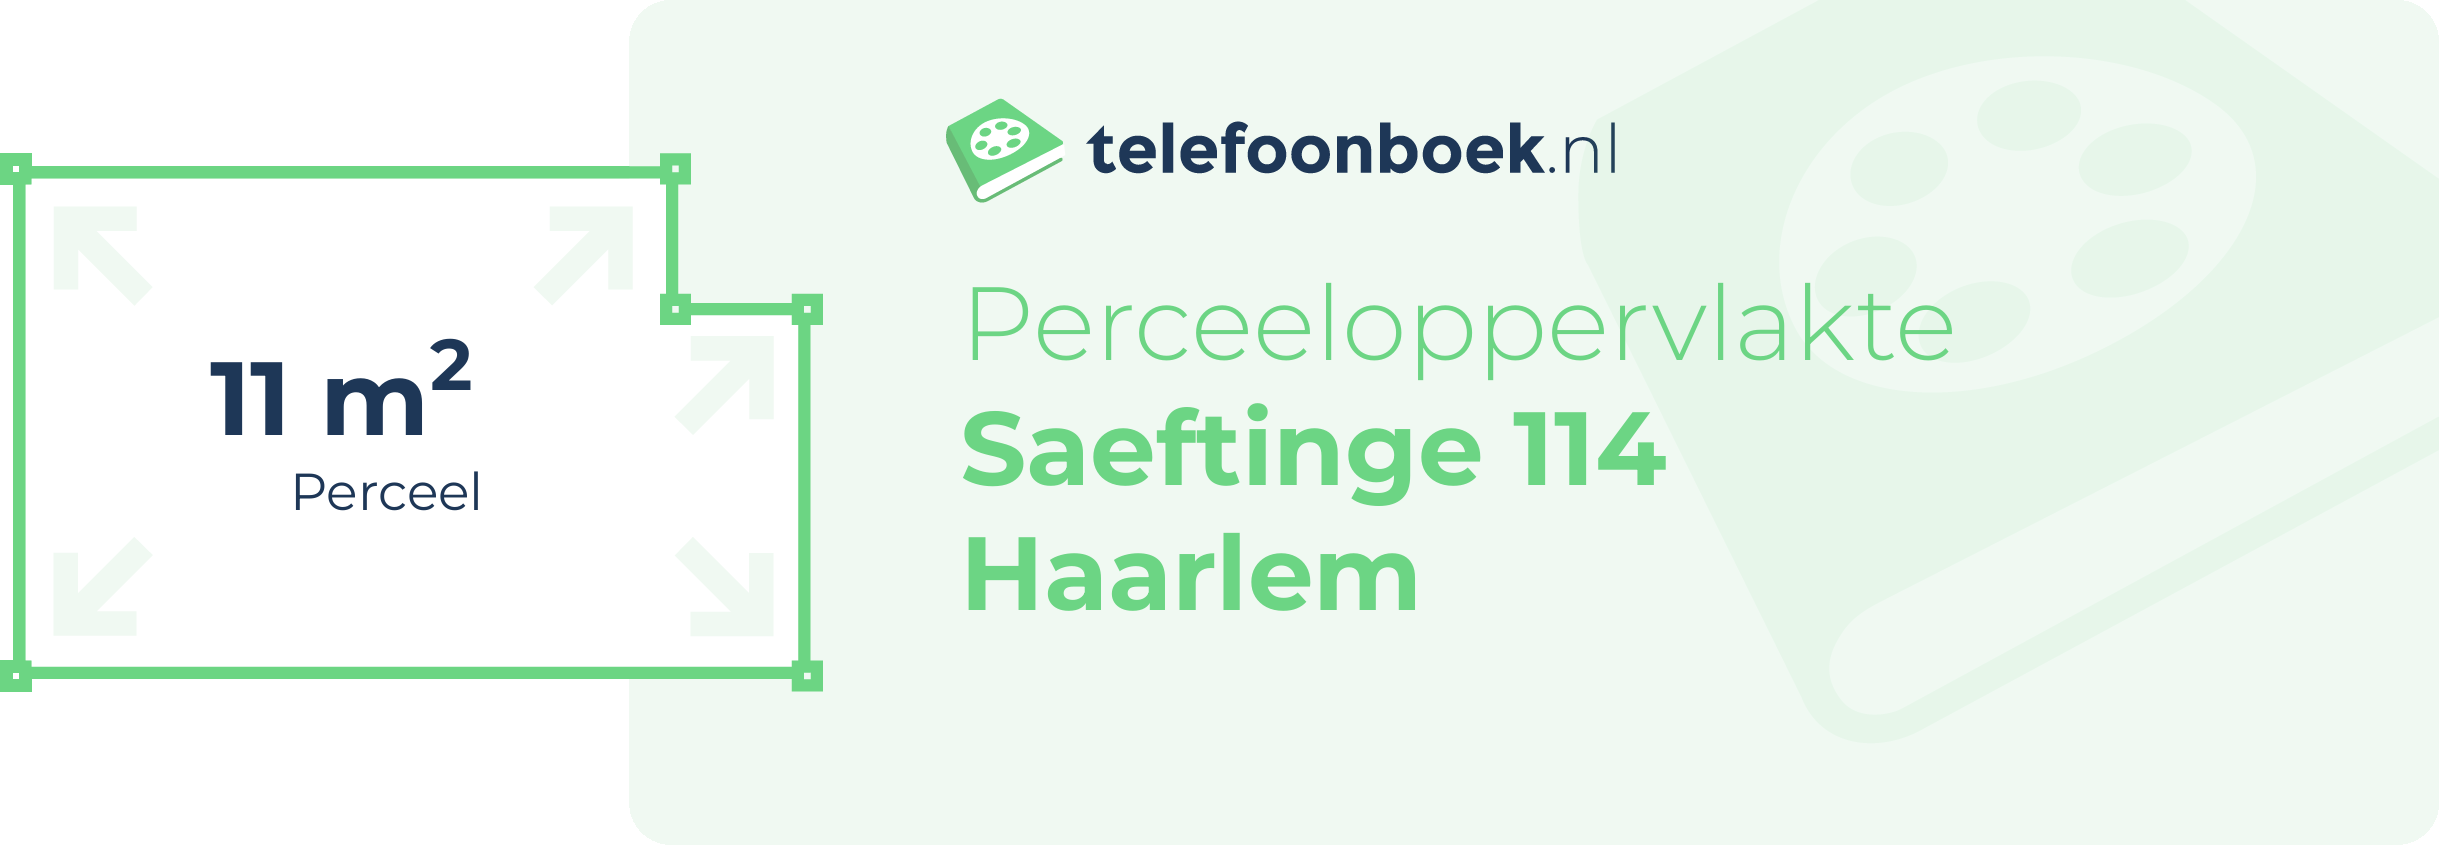 Perceeloppervlakte Saeftinge 114 Haarlem